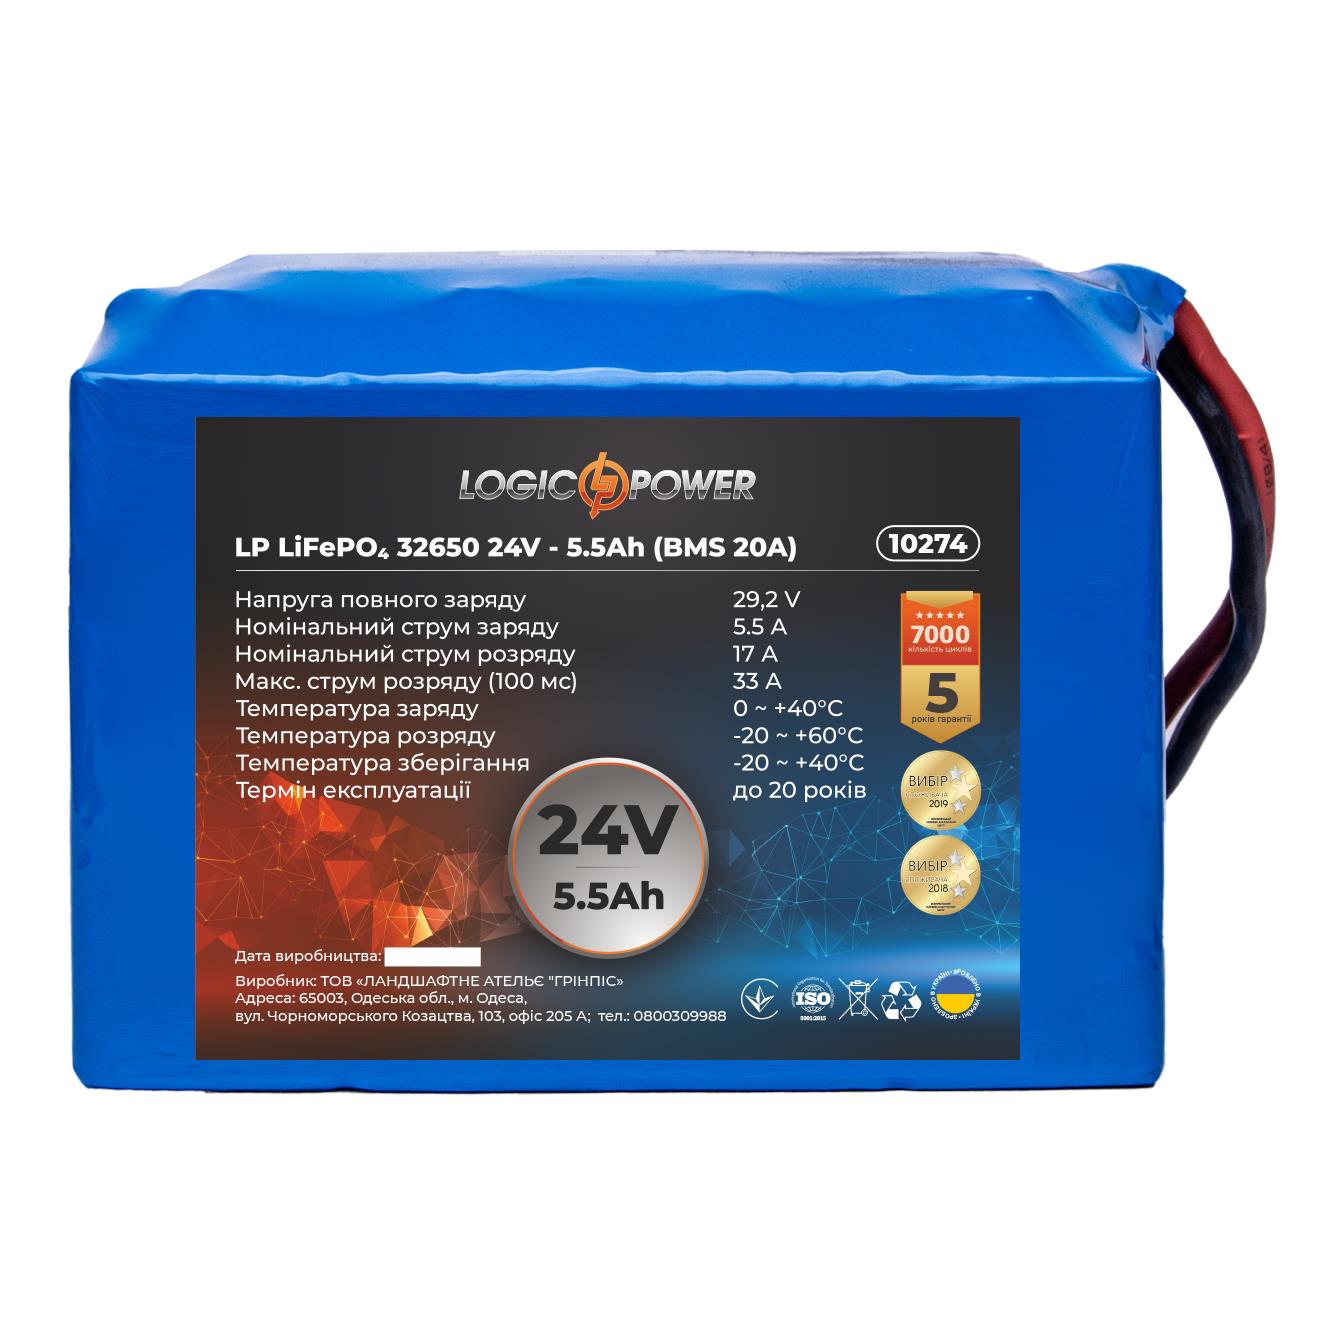 Аккумулятор литий-железо-фосфатный LogicPower LP LiFePO4 32650 24V - 5.5 Ah (BMS 20A) (10274)